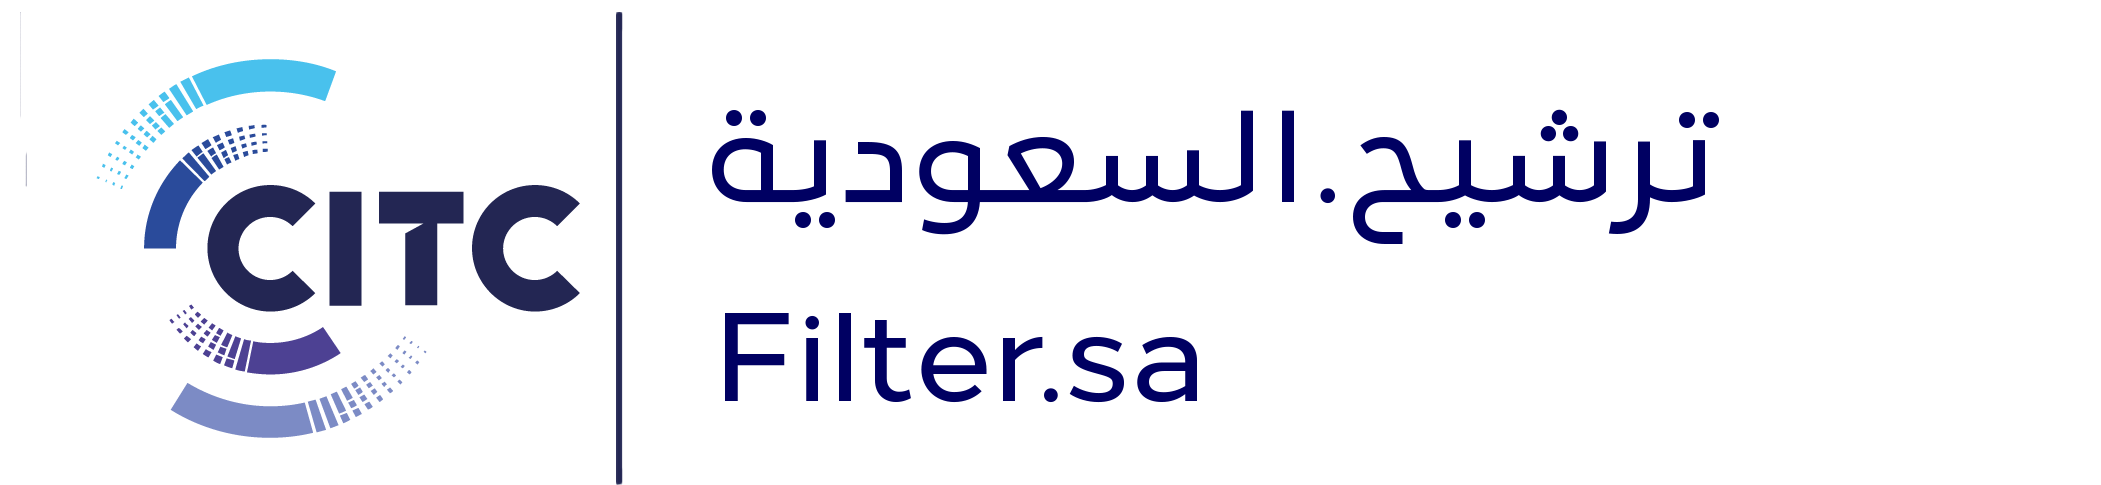 filter.sa | الترشيح.السعودية